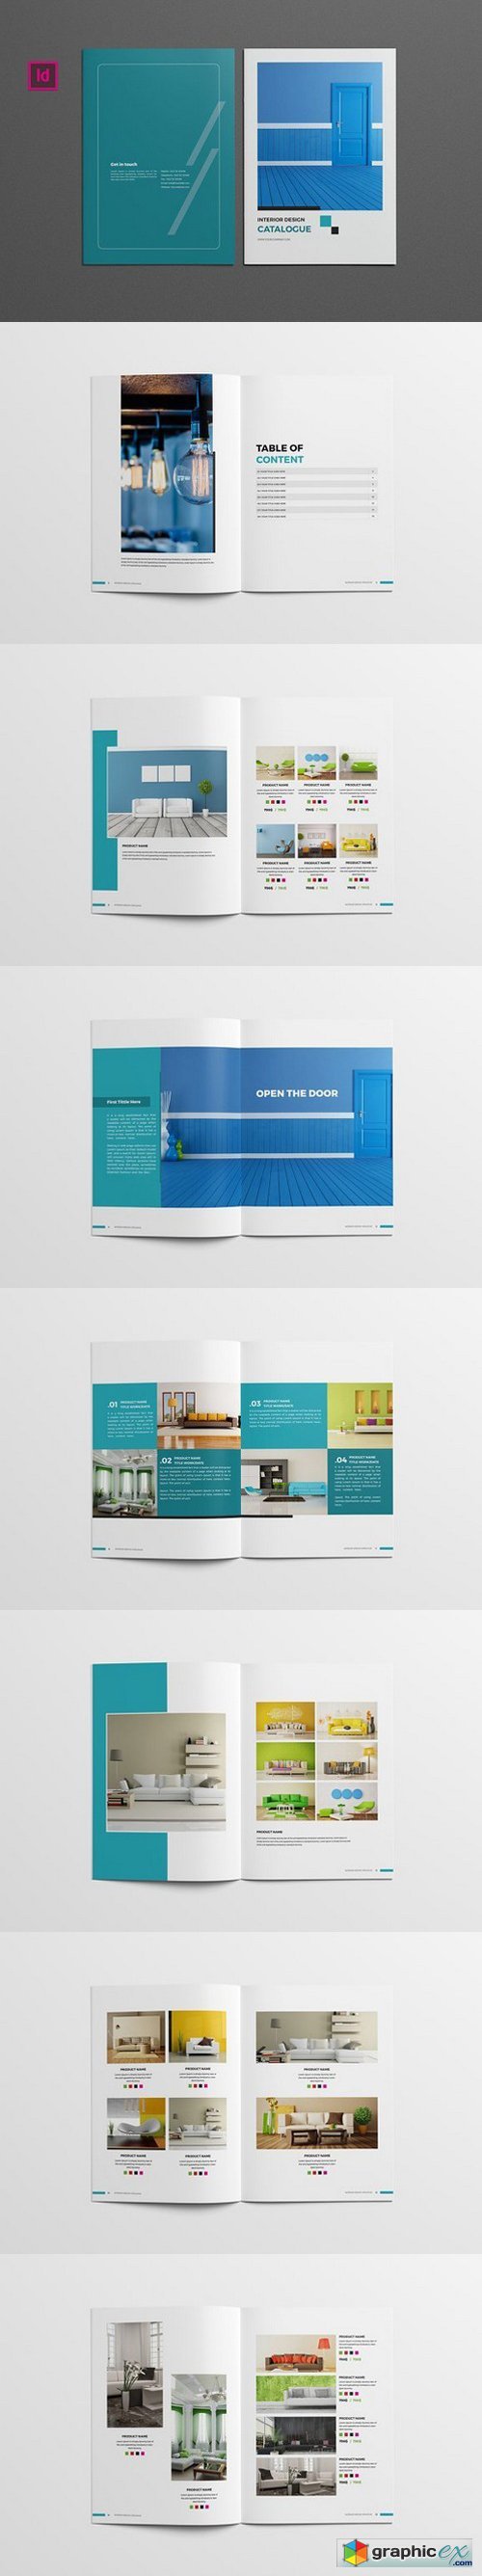 Interior Design Catalog